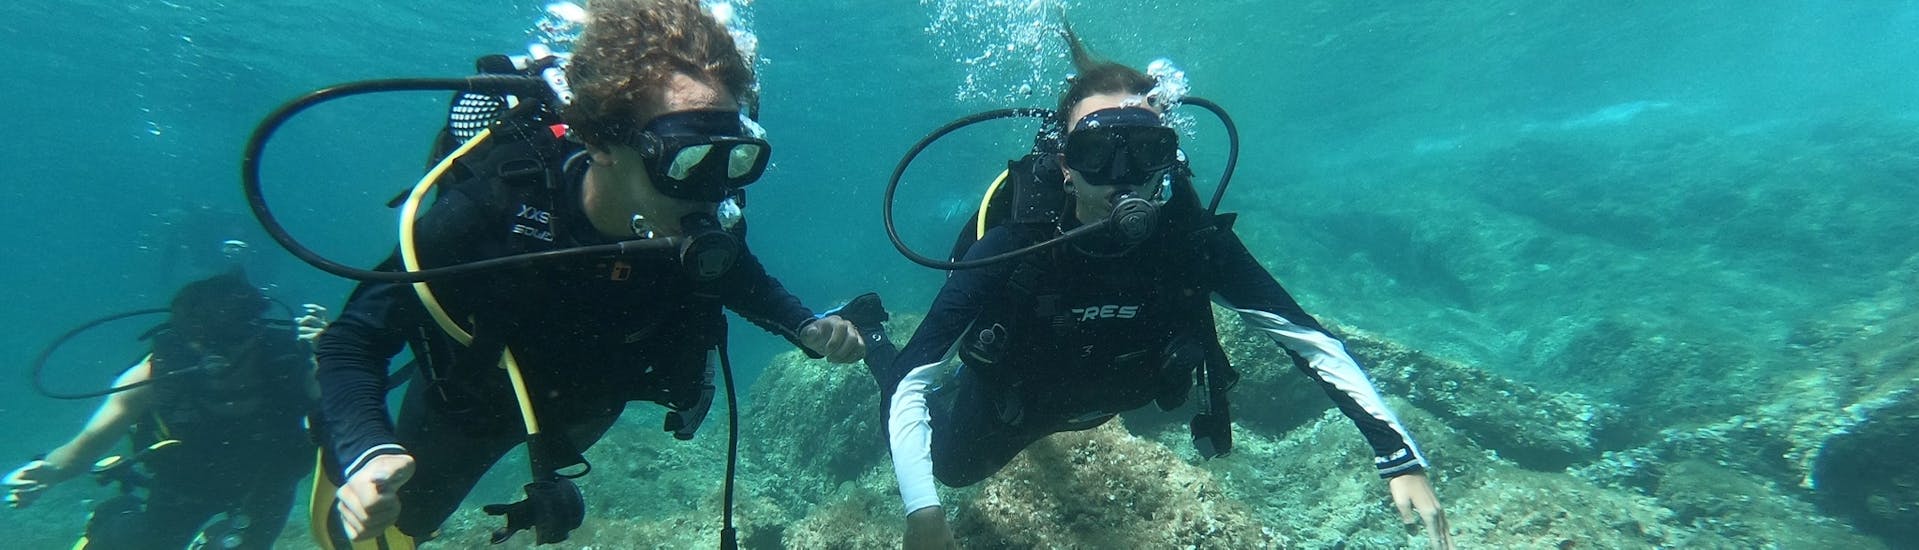 Deux amis plongeant dans les eaux bleues de Majorque lors d'un cours PADI Discover Scuba Diving avec Albatros Diving à Cala Bona.